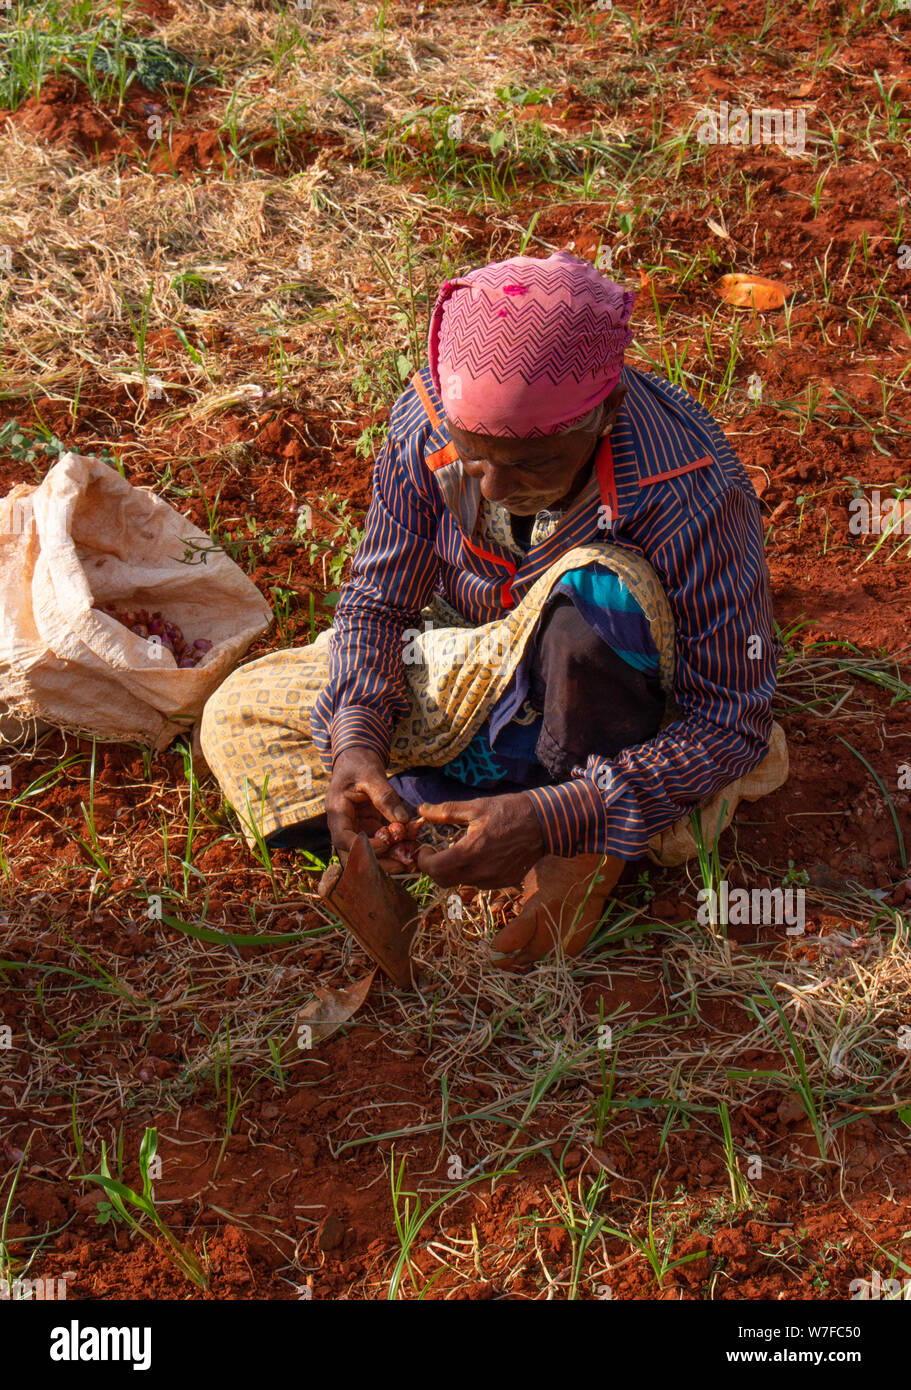 Agriculteur local travaillant sur la plantation d'oignons au Sri Lanka Banque D'Images